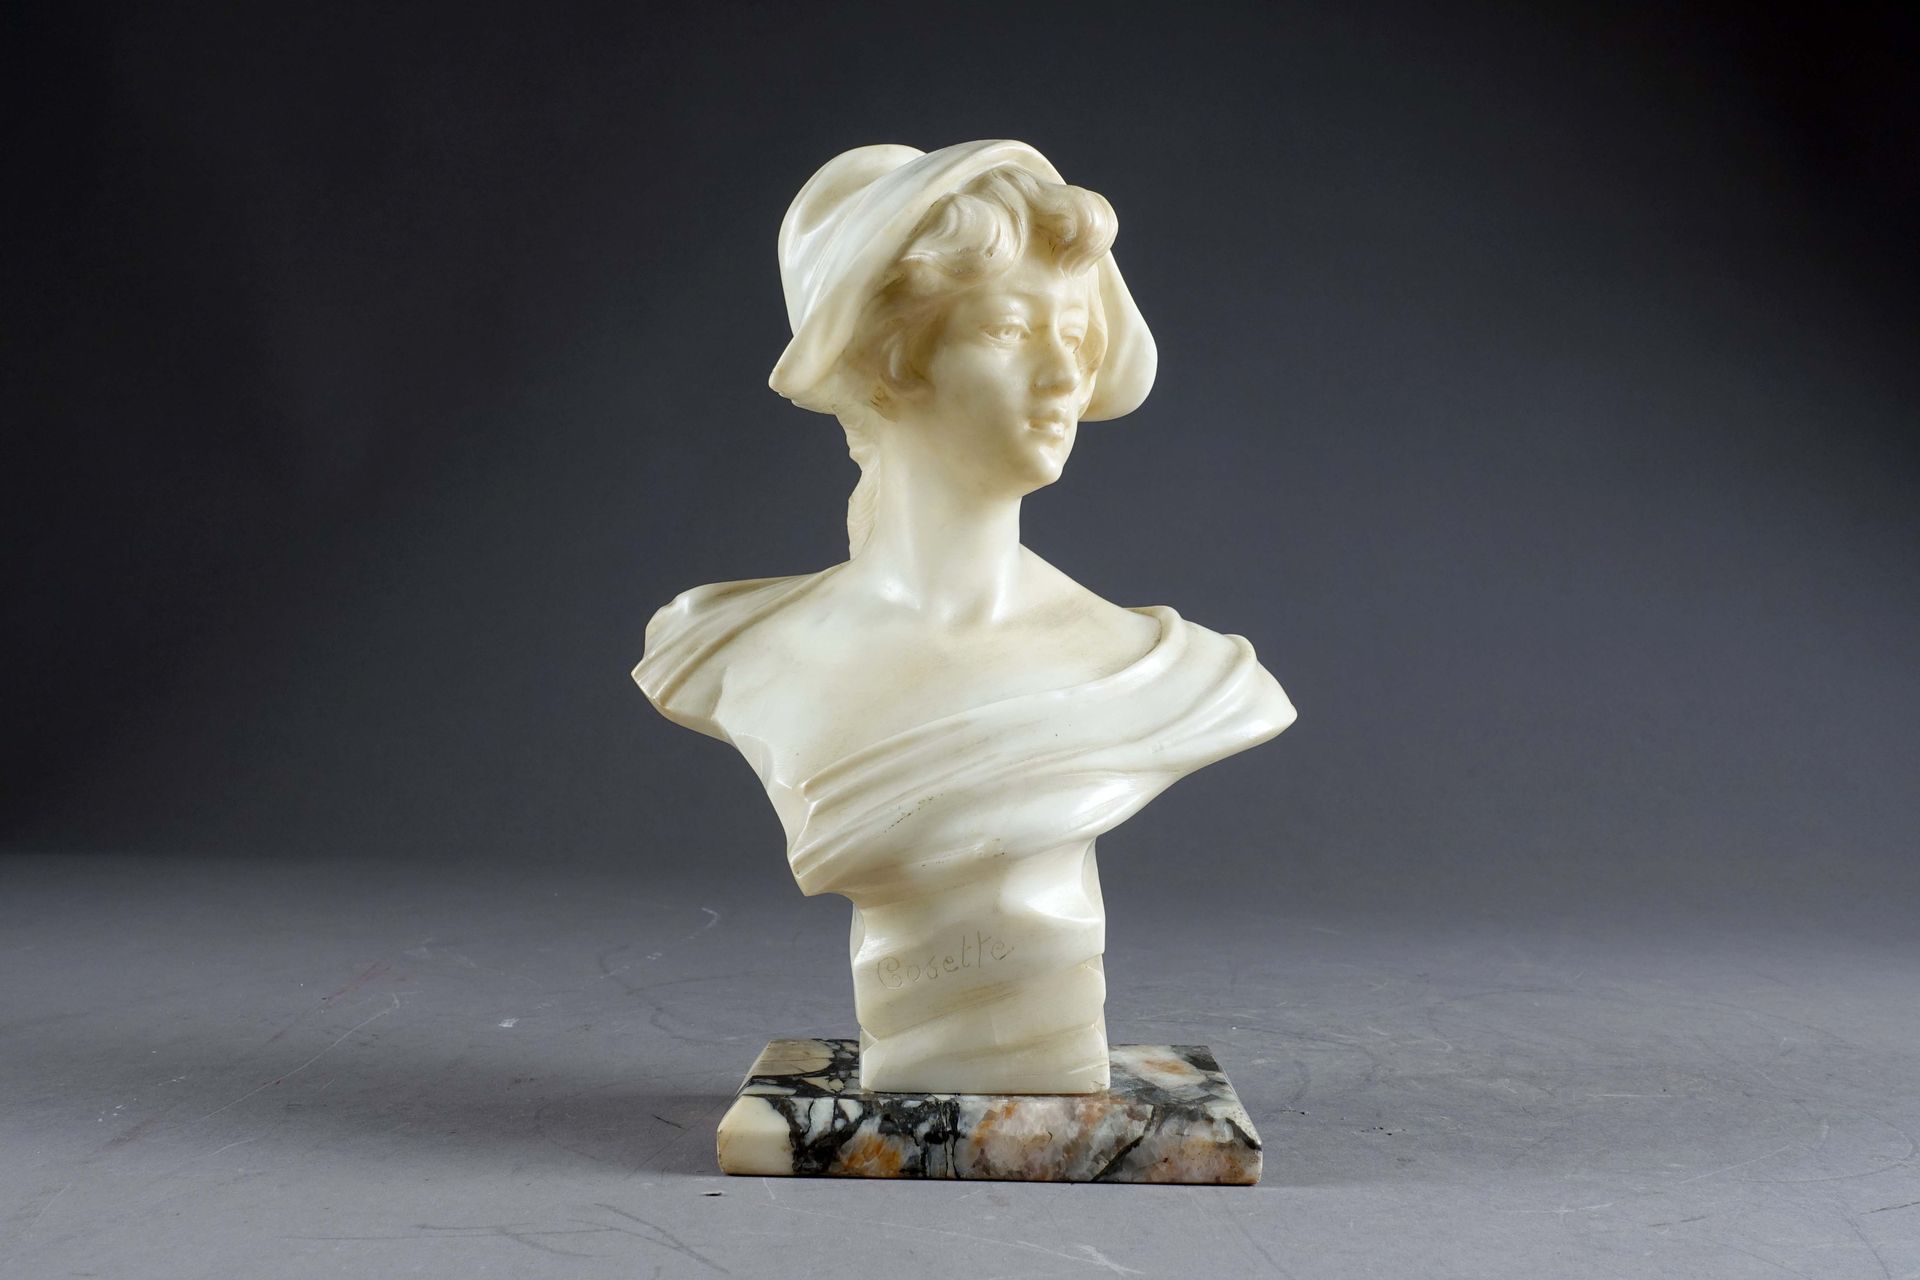 Cosette. 大理石平台上雕刻的雪花石膏半身像。无符号。19/20世纪。高度：30厘米。状态 : 无事故。